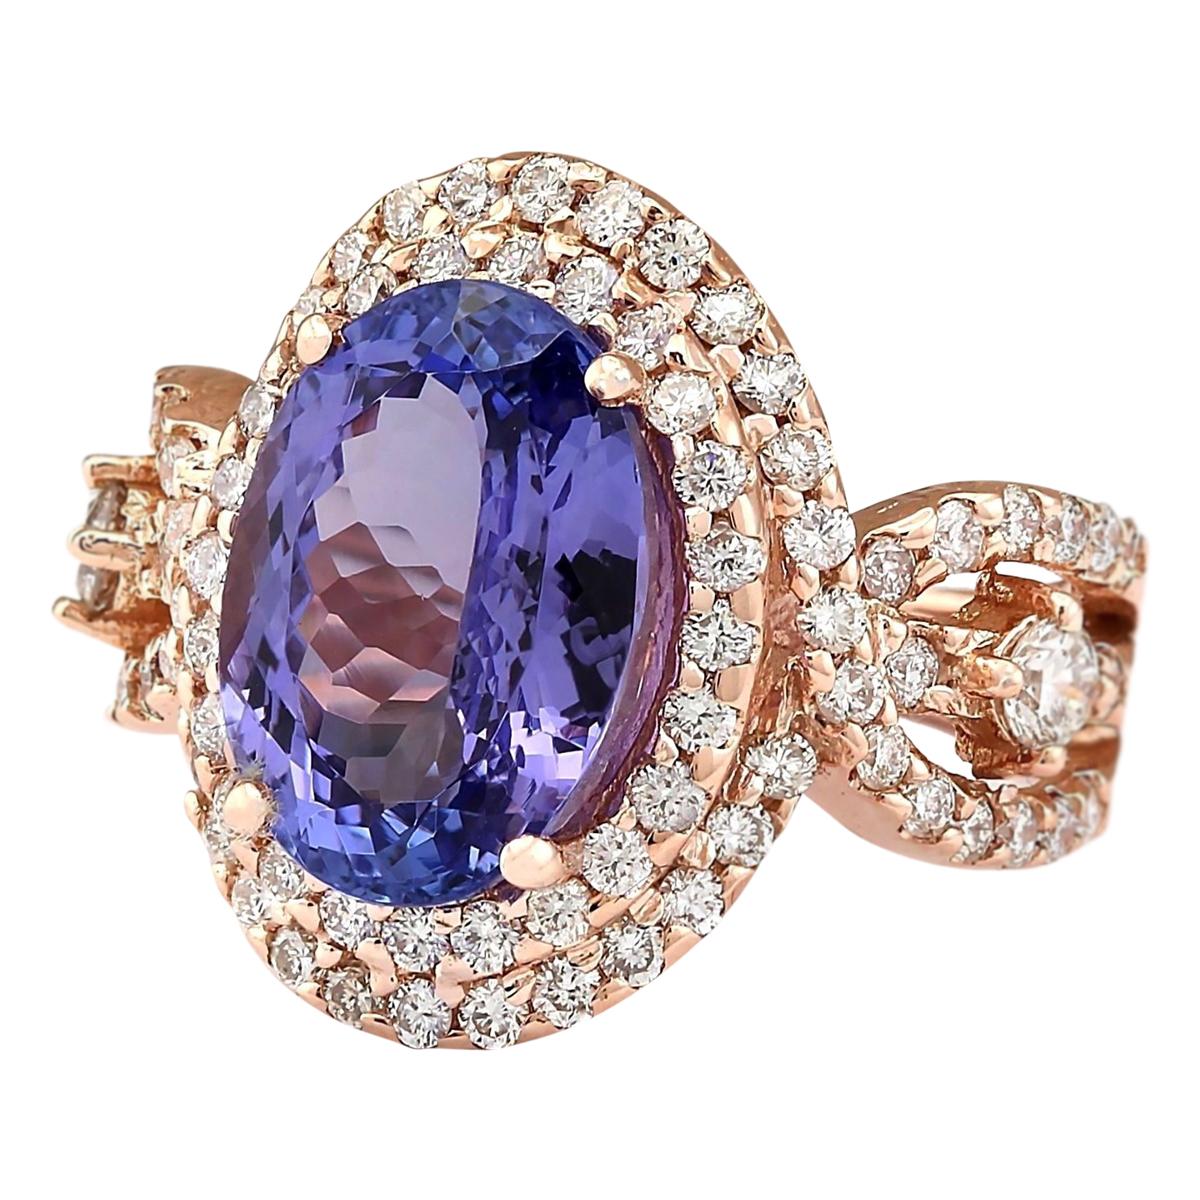 7.02 Carat Tanzanite 14 Karat Rose Gold Diamond Ring
Stamped: 14K Rose Gold
Total Ring Weight: 8.1 Grams
Total  Tanzanite Weight is 5.81 Carat (Measures: 12.00x10.00 mm)
Color: Blue
Total  Diamond Weight is 1.21 Carat
Color: F-G, Clarity: